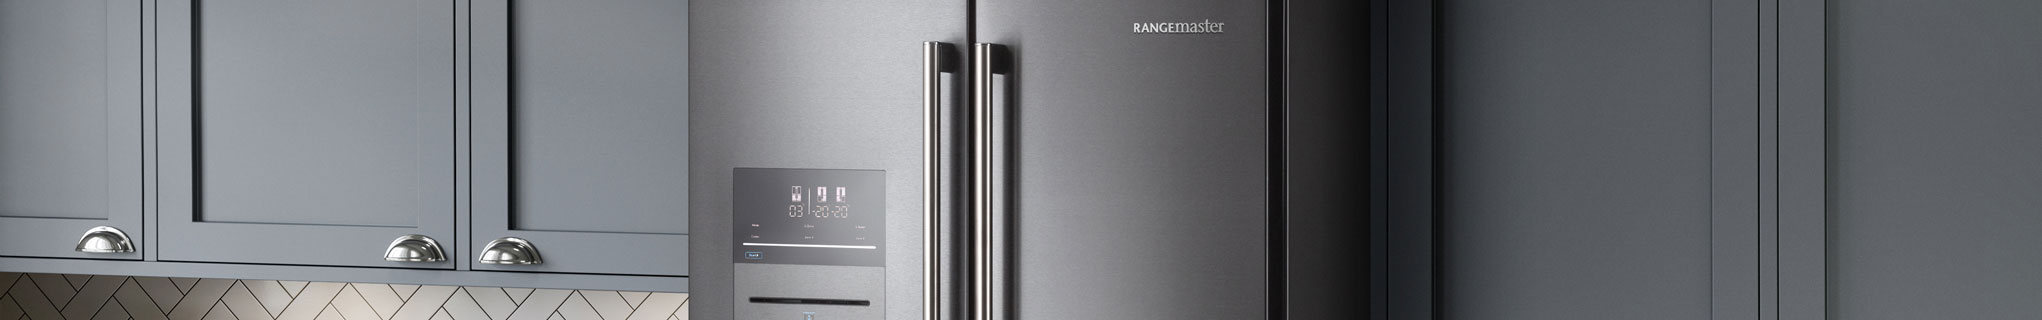 Rangemaster SXS Deluxe Fridge Freezer 